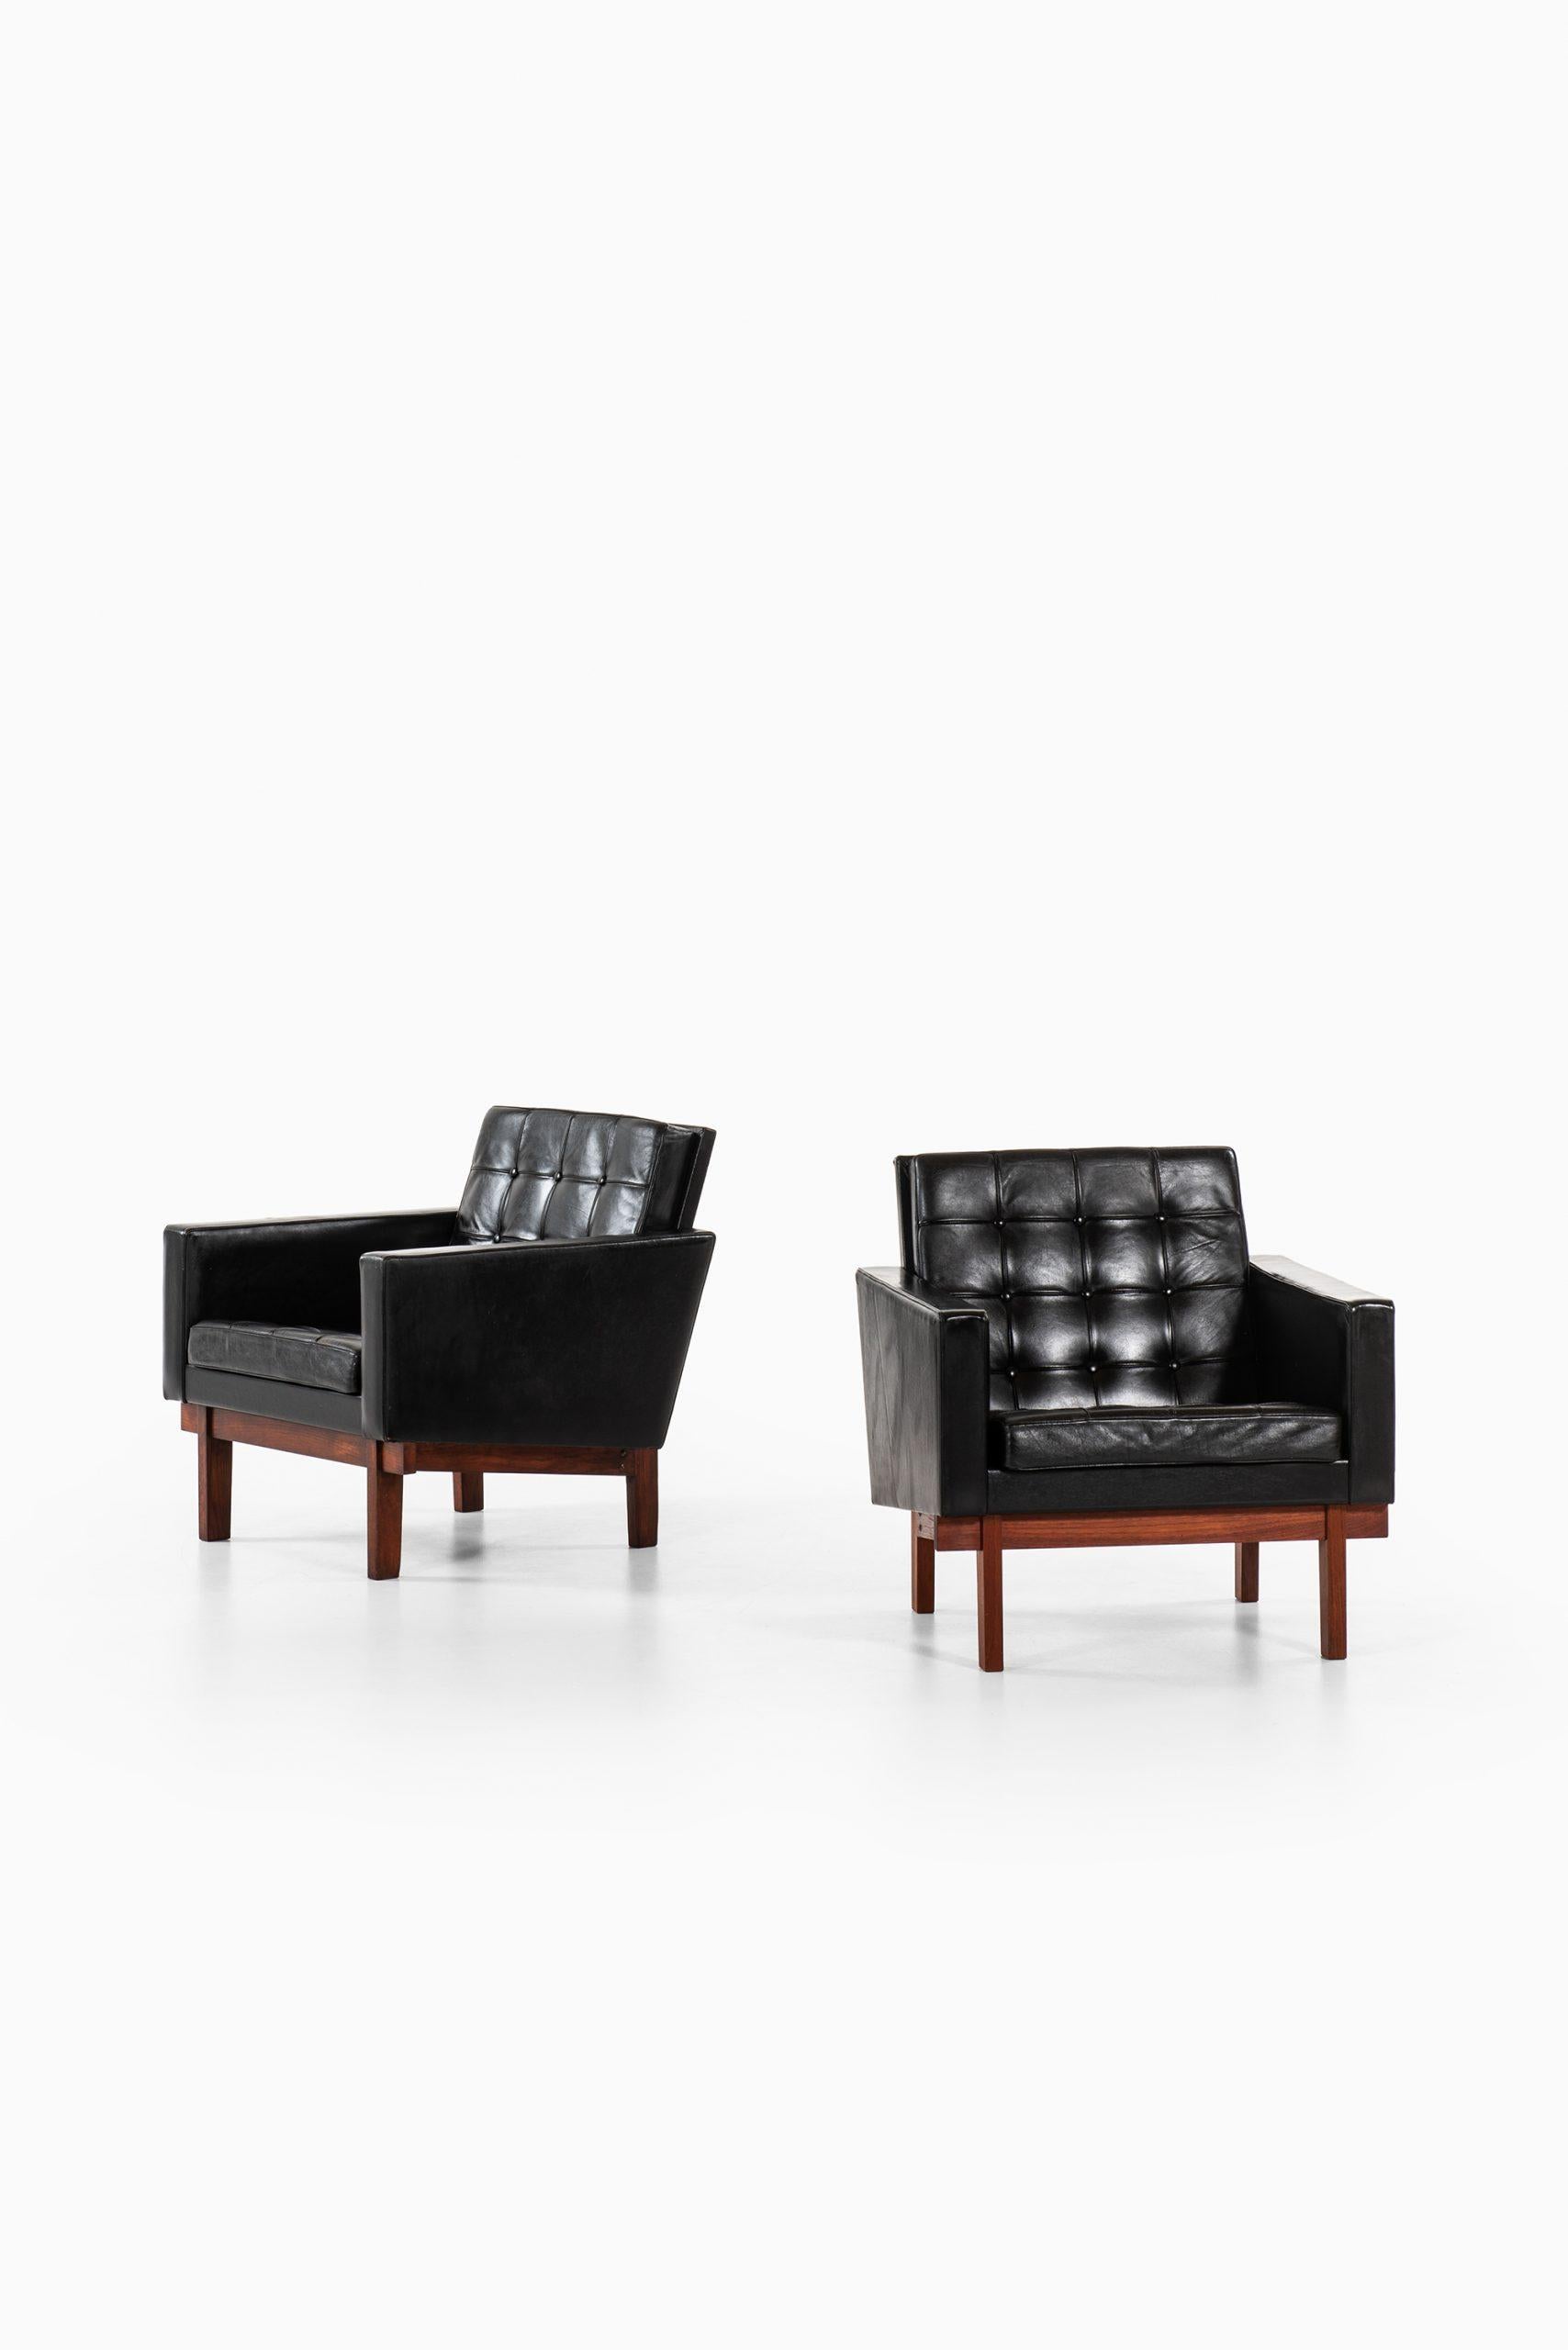 Seltenes Paar Sessel, entworfen von Karl-Erik Ekselius. Produziert von JOC in Schweden.